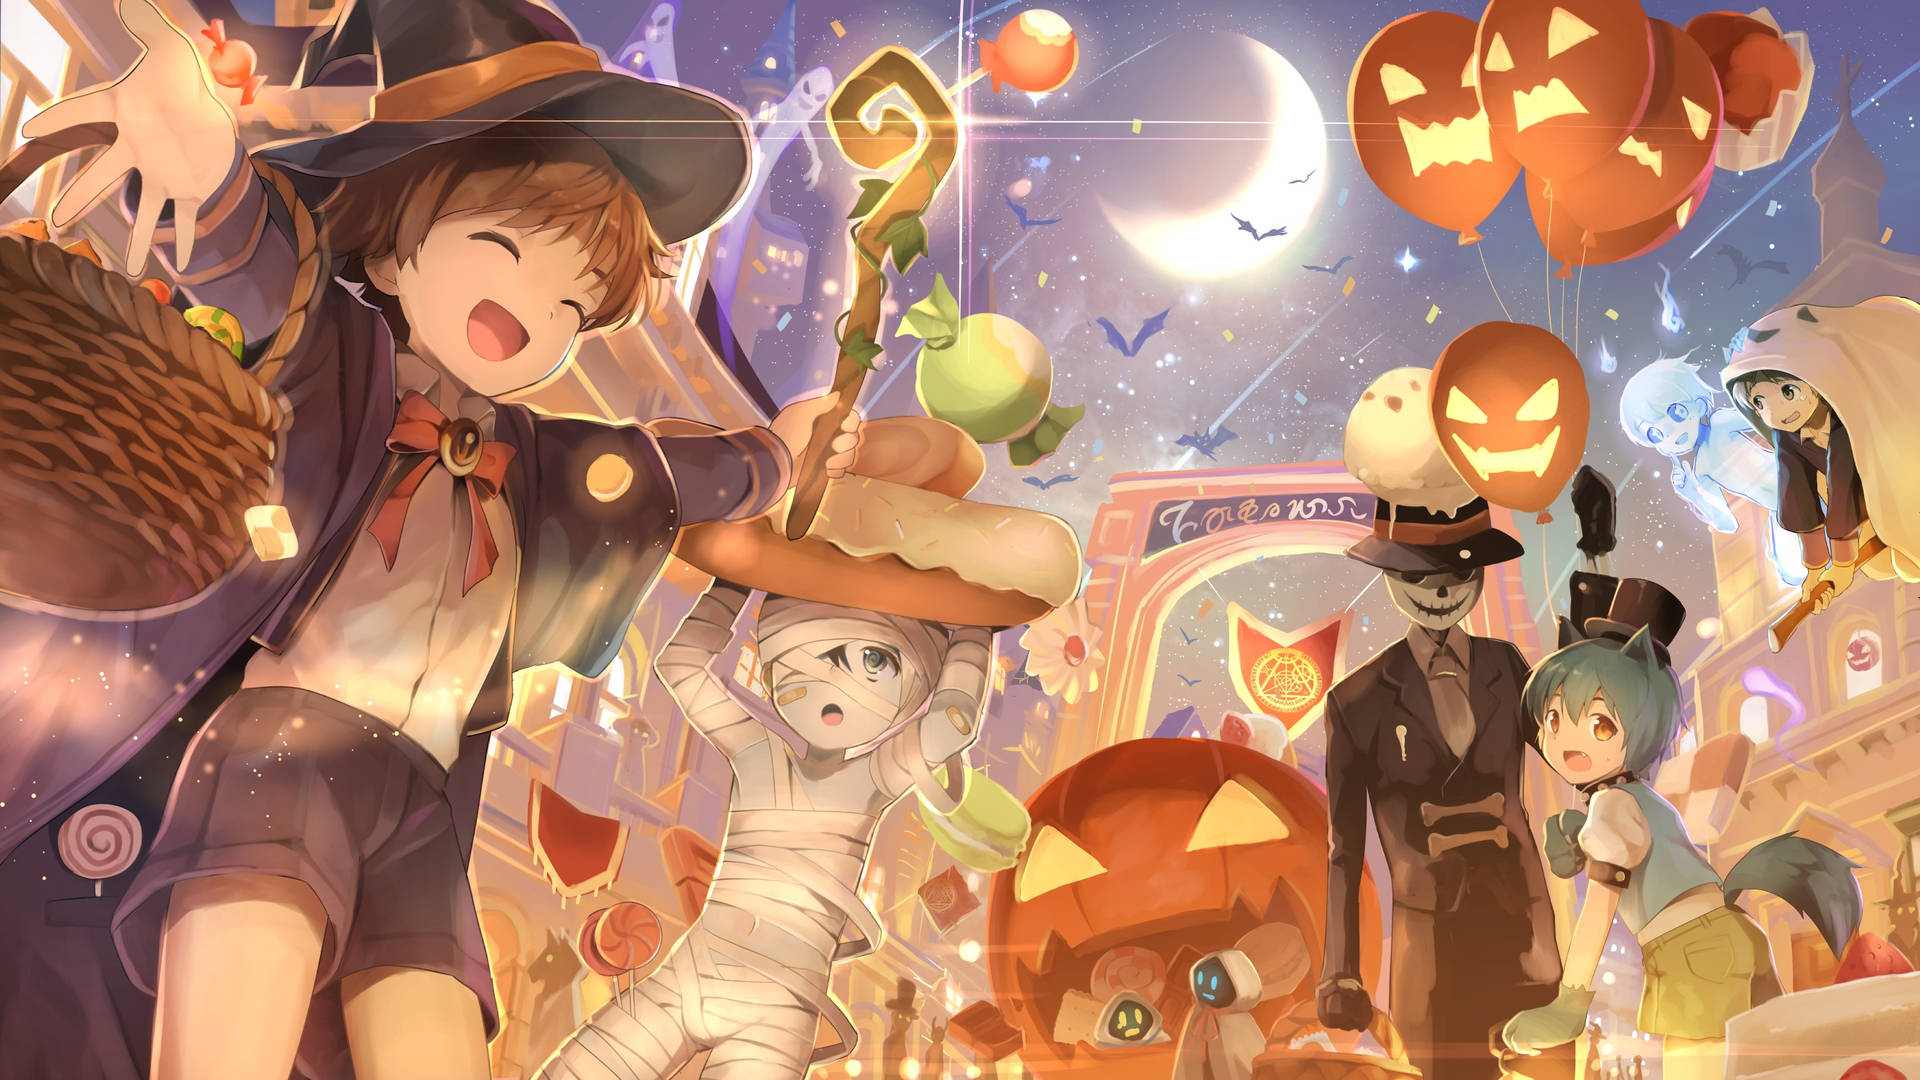 Personagensde Anime Do Halloween Fazendo 